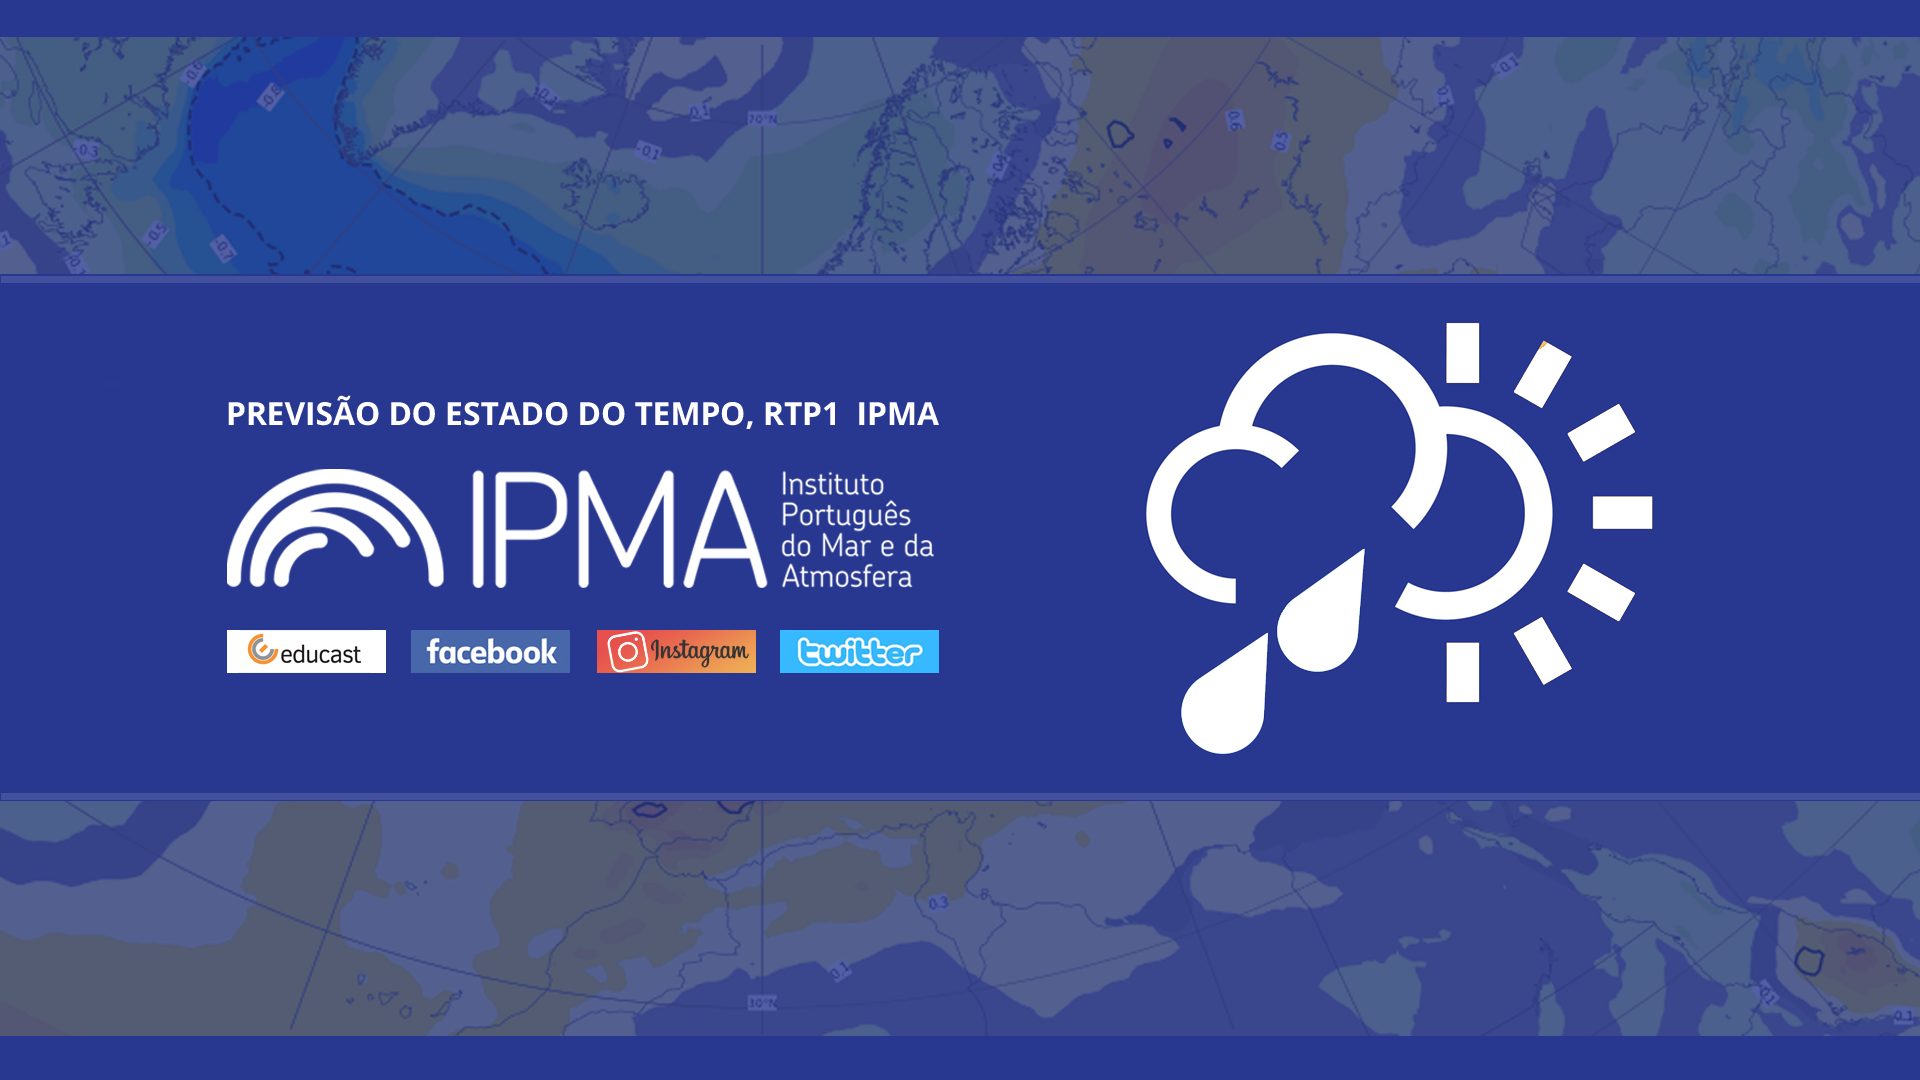  Previsão do estado do tempo, RTP1, 17-02-2022, IPMA.